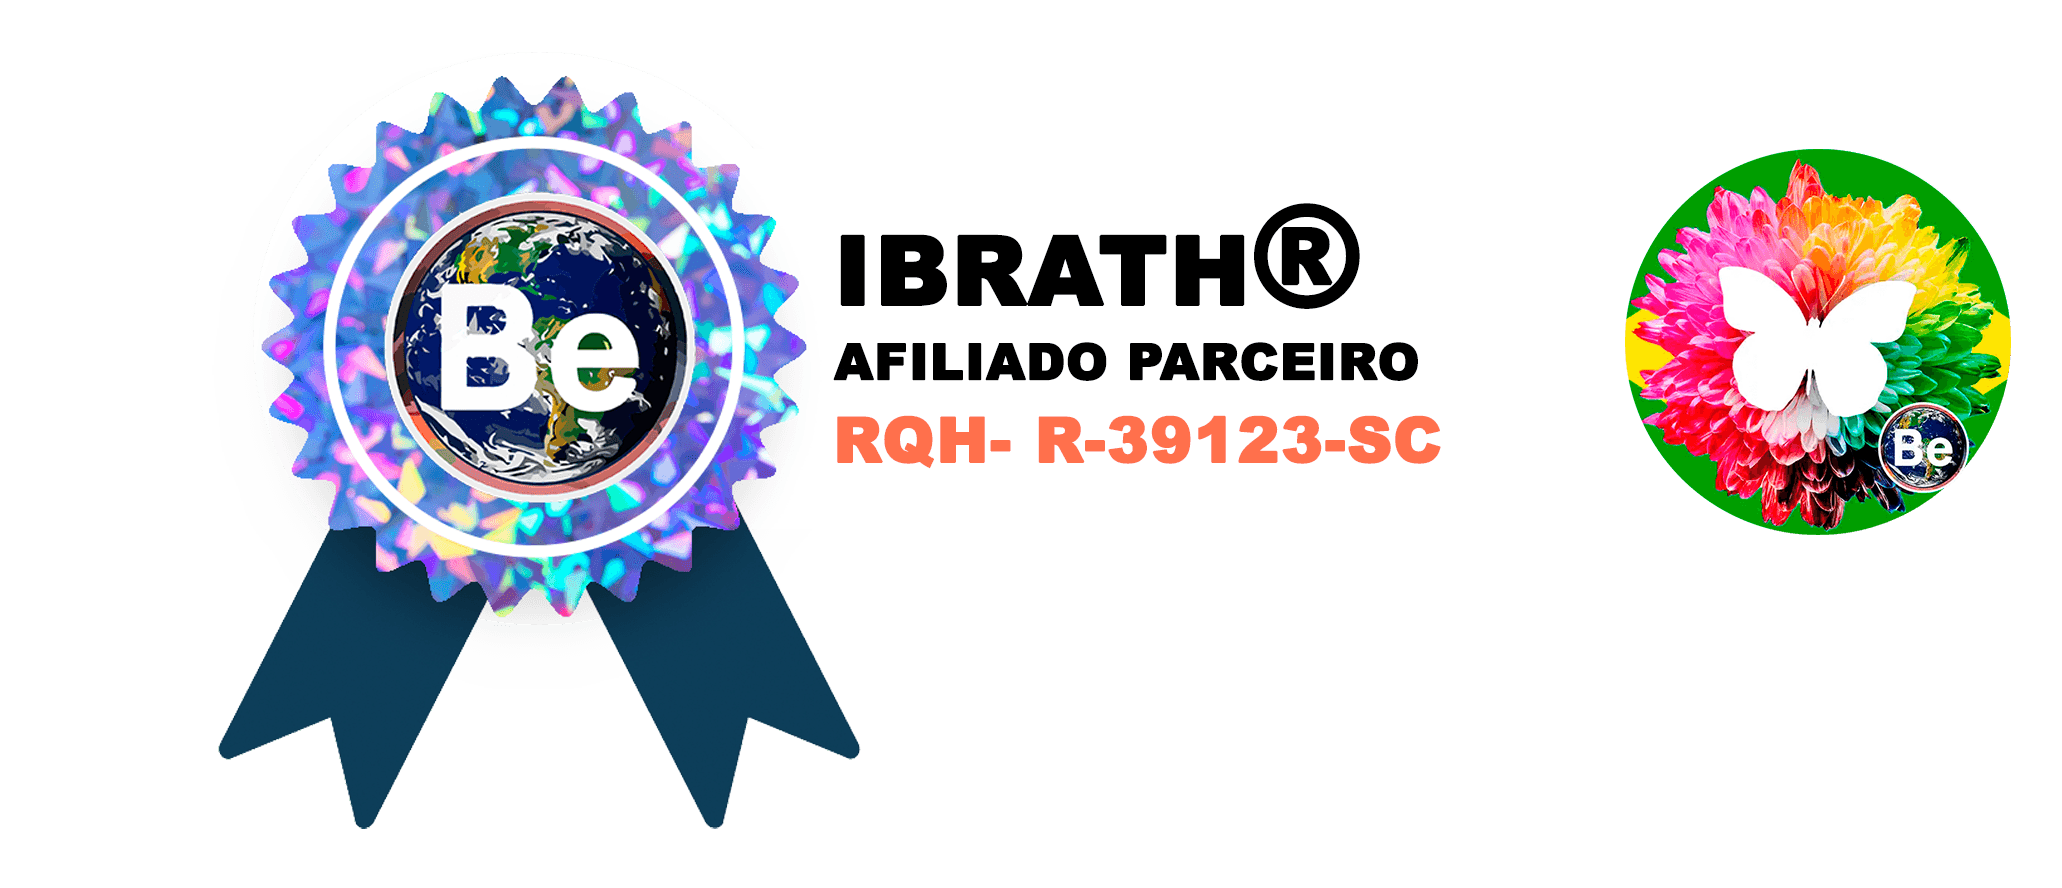 Instituição / Afiliado / Professor / Terapeuta Parceiro(a) CNPJ - IBRATH Instituto Brasileiro de Terapias Holísticas Ferramentas Profissionais, registro profissional, todos